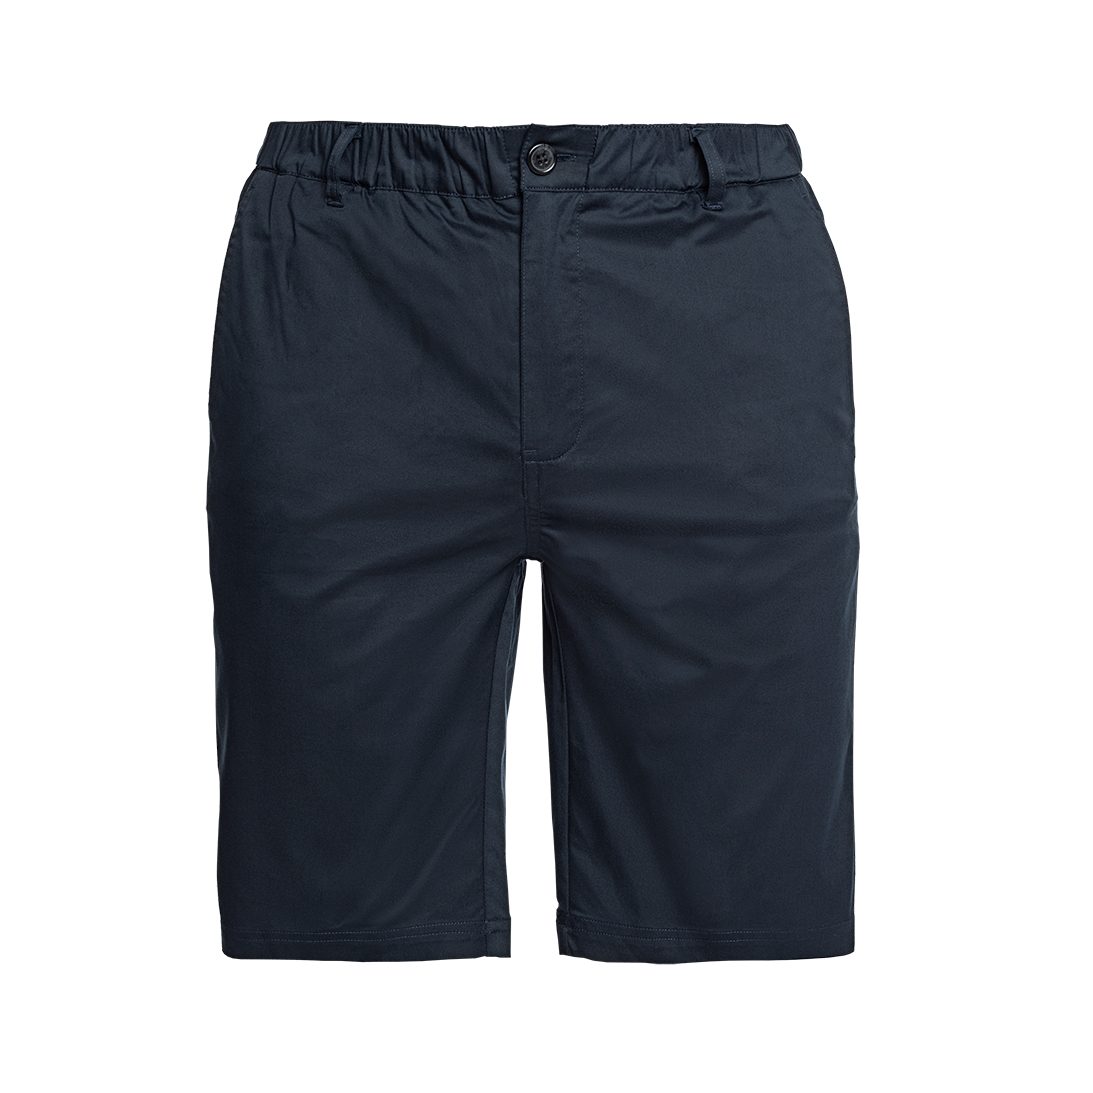 Papas Shorts Chinoshorts Kurze knielange Shorts - Sommer Shorts mit  bequemem, elastischem Bund und 6 Taschen, davon 2 versteckten, sicheren  Reißverschlusstaschen für Wertgegenstände